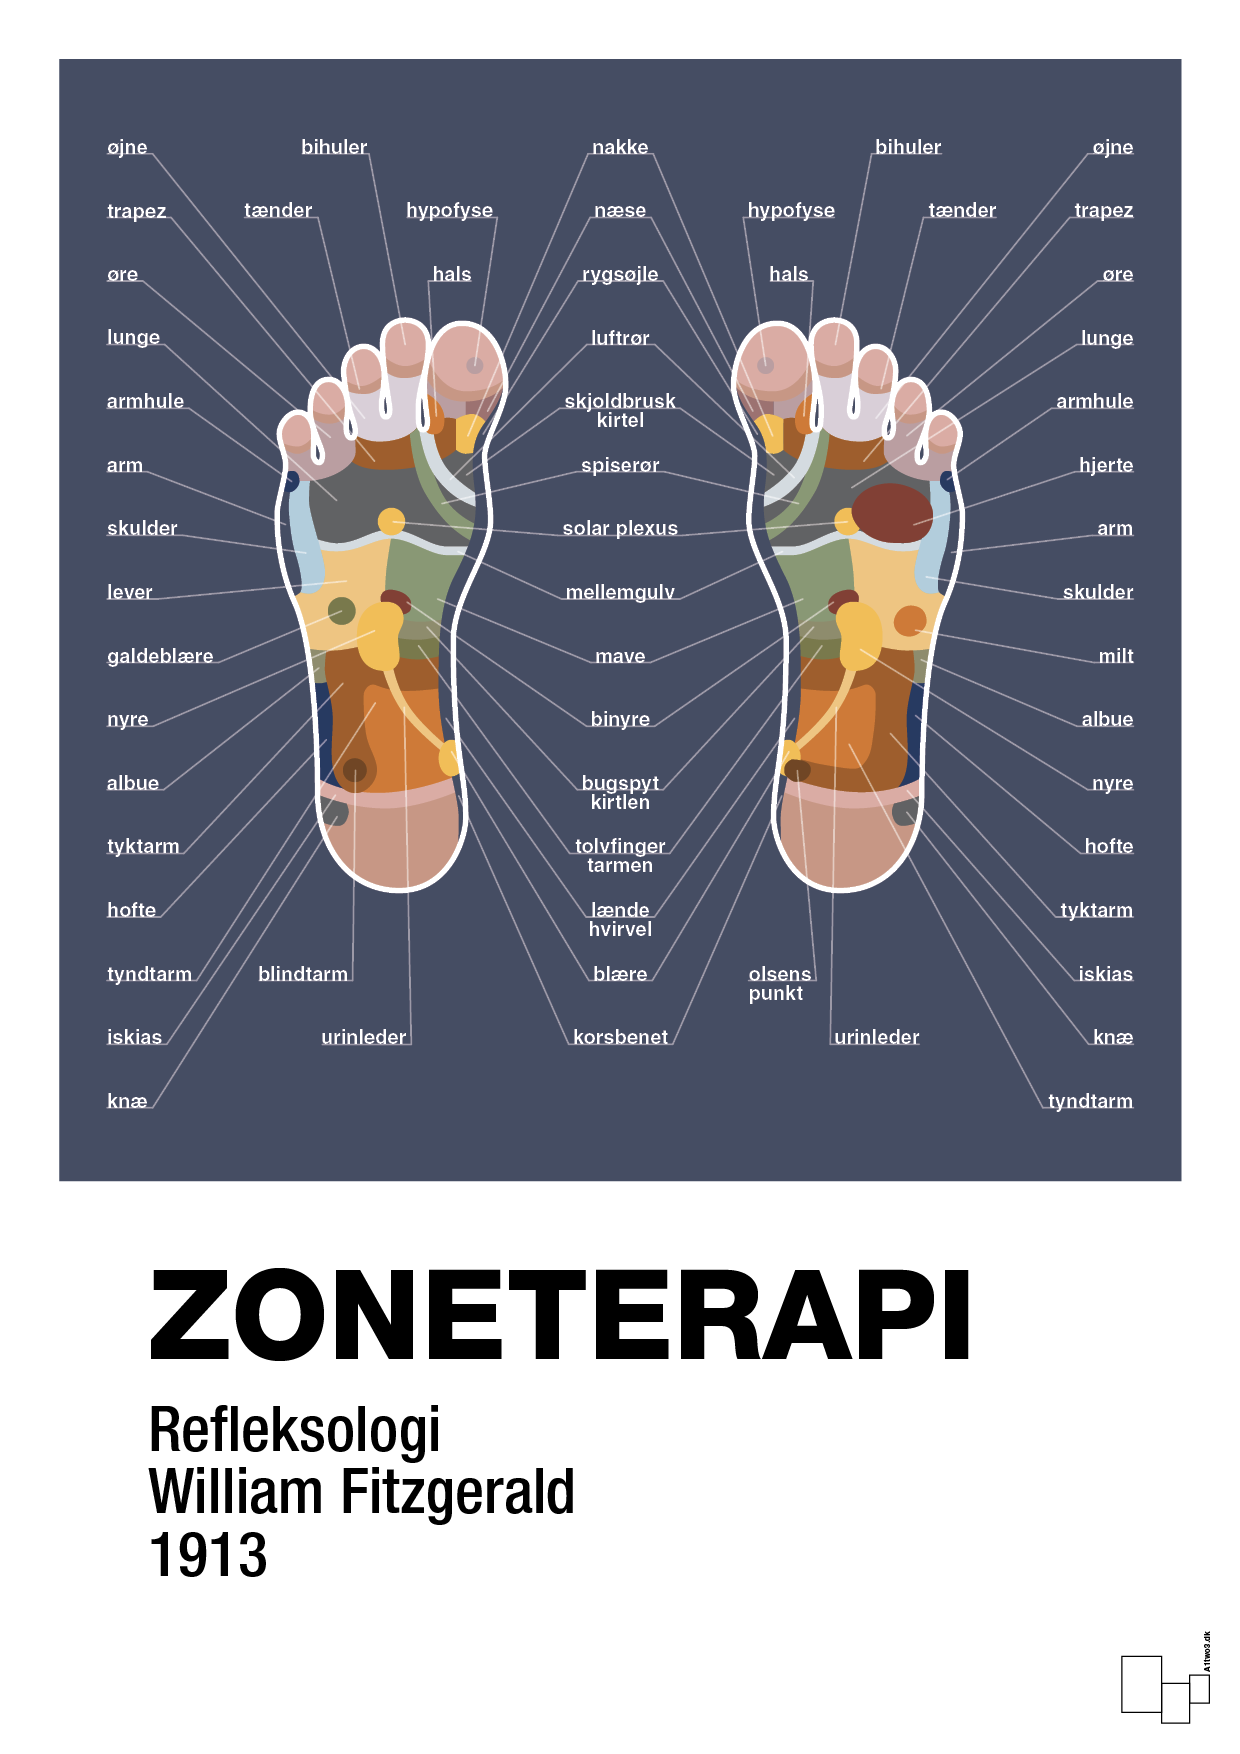 zoneterapi - Plakat med Videnskab i Petrol